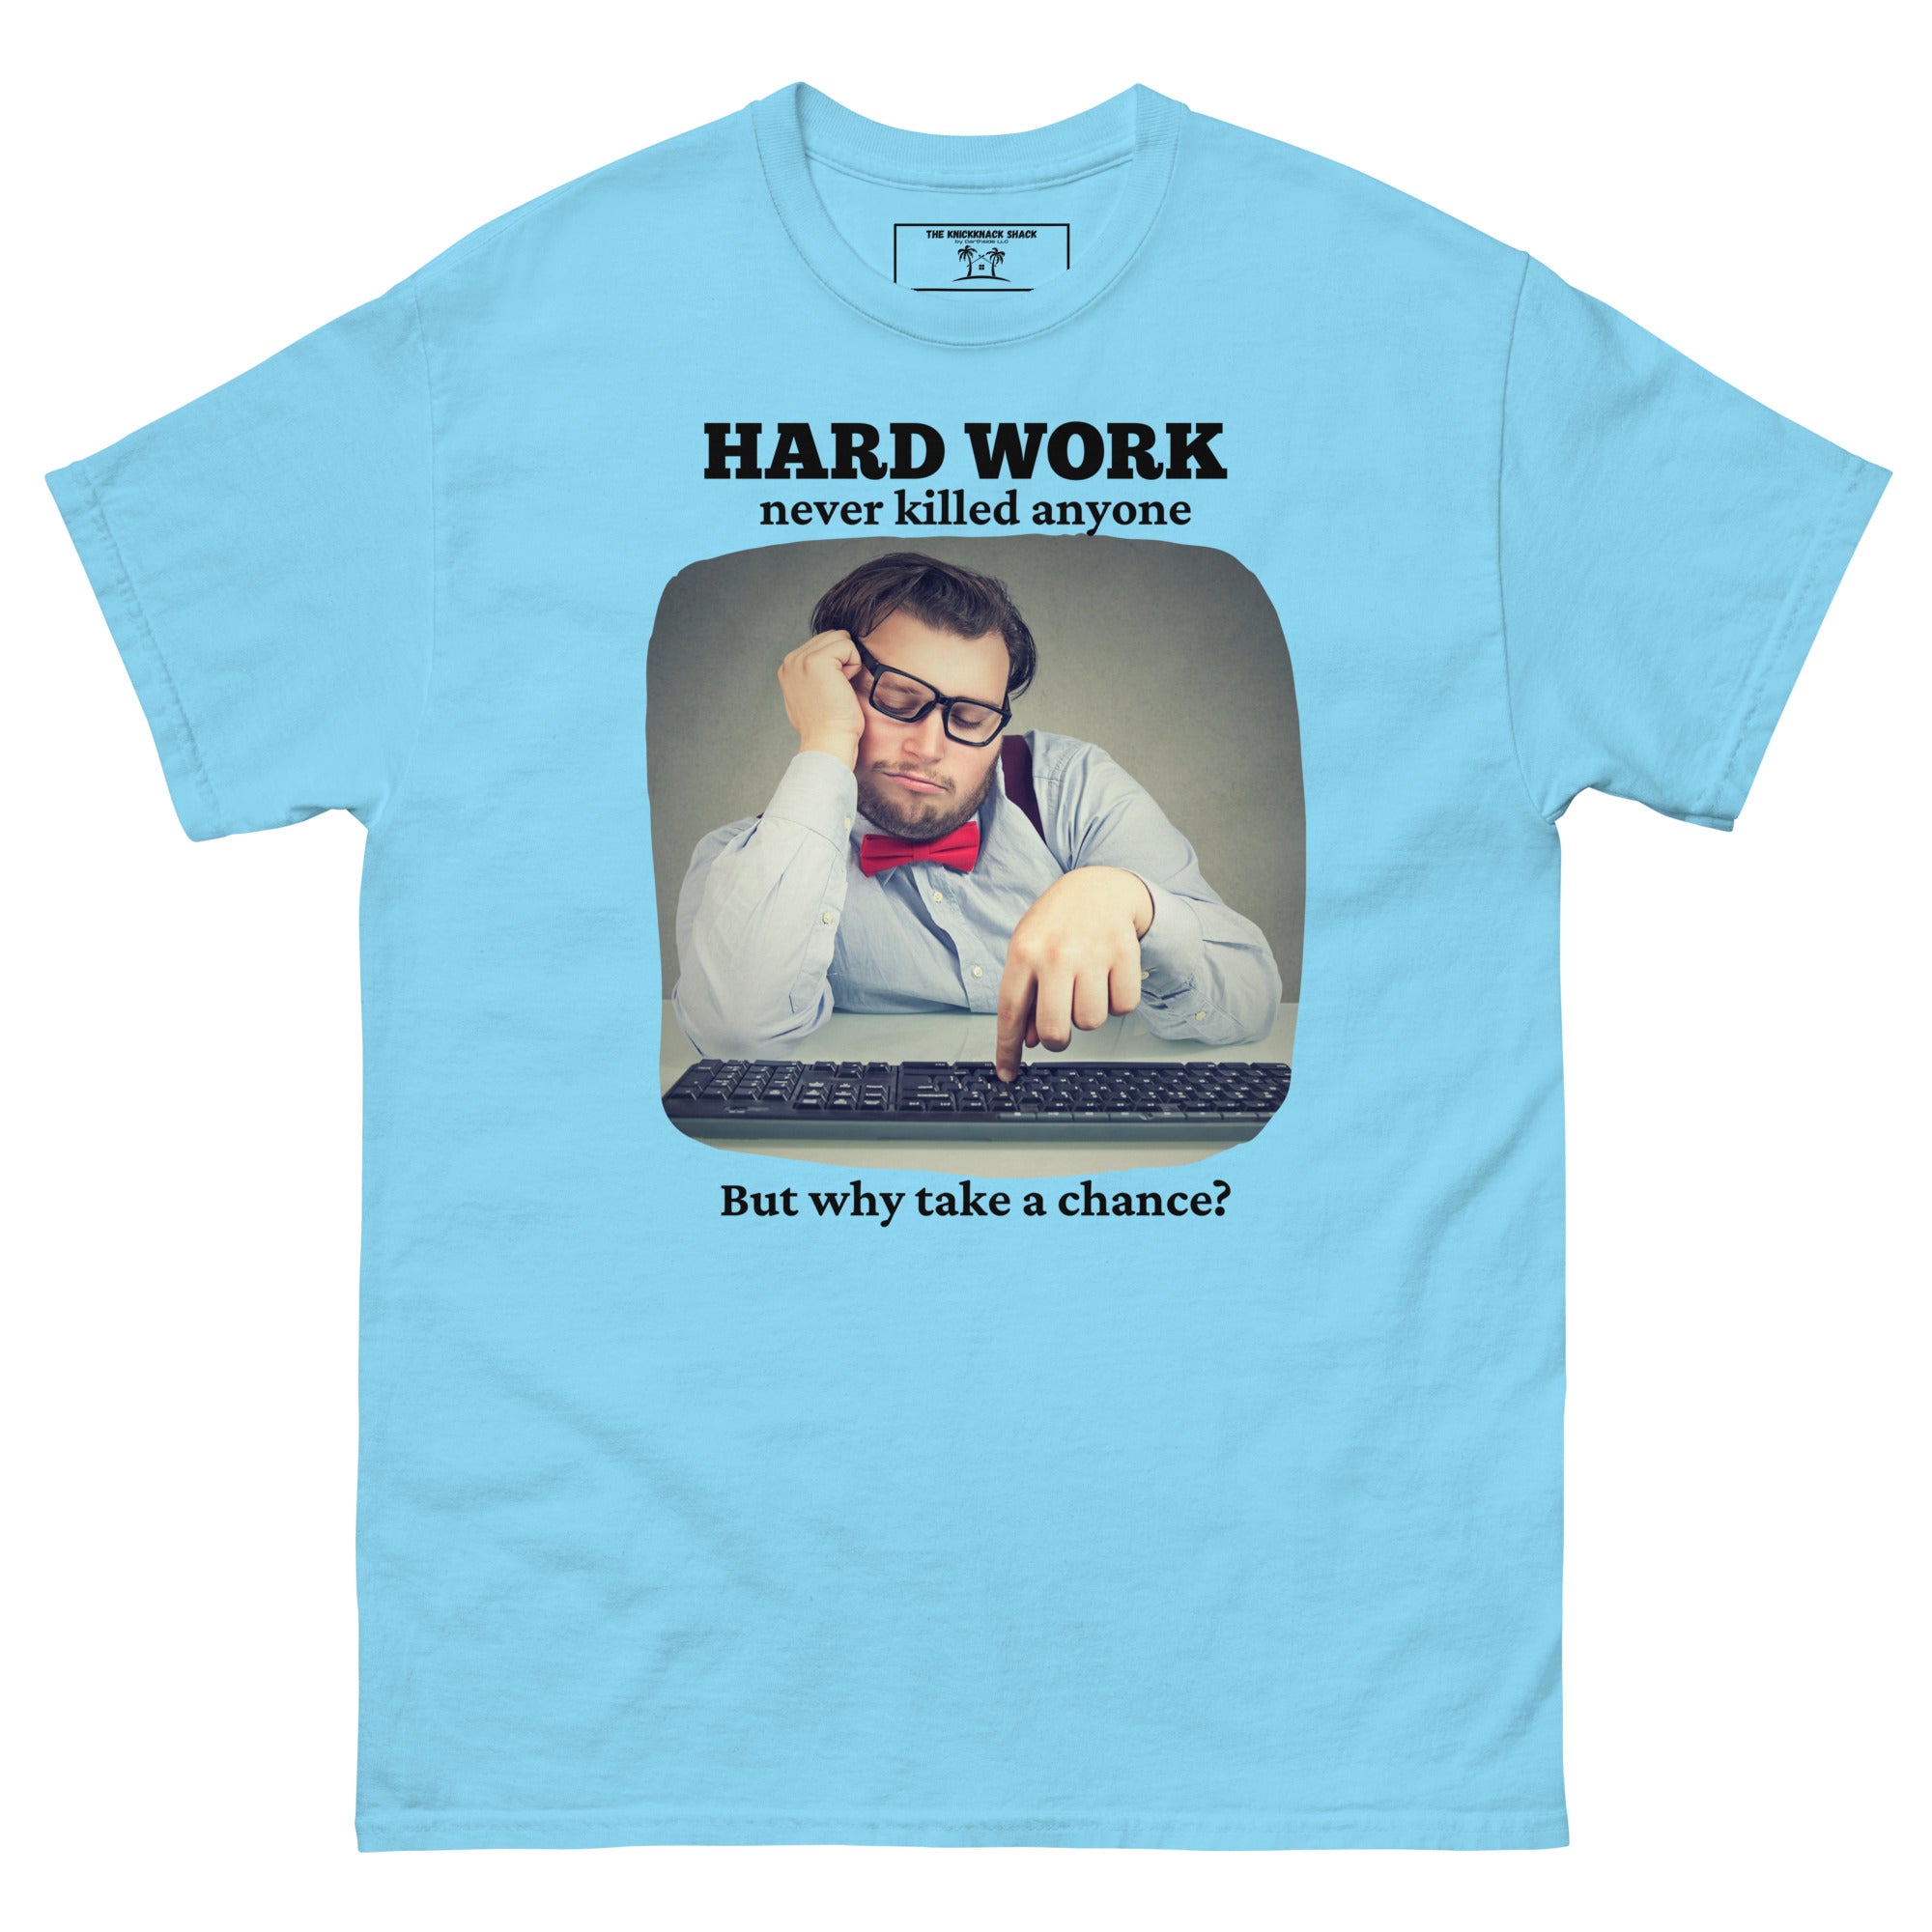 Camiseta clásica - Trabajo duro (colores claros)